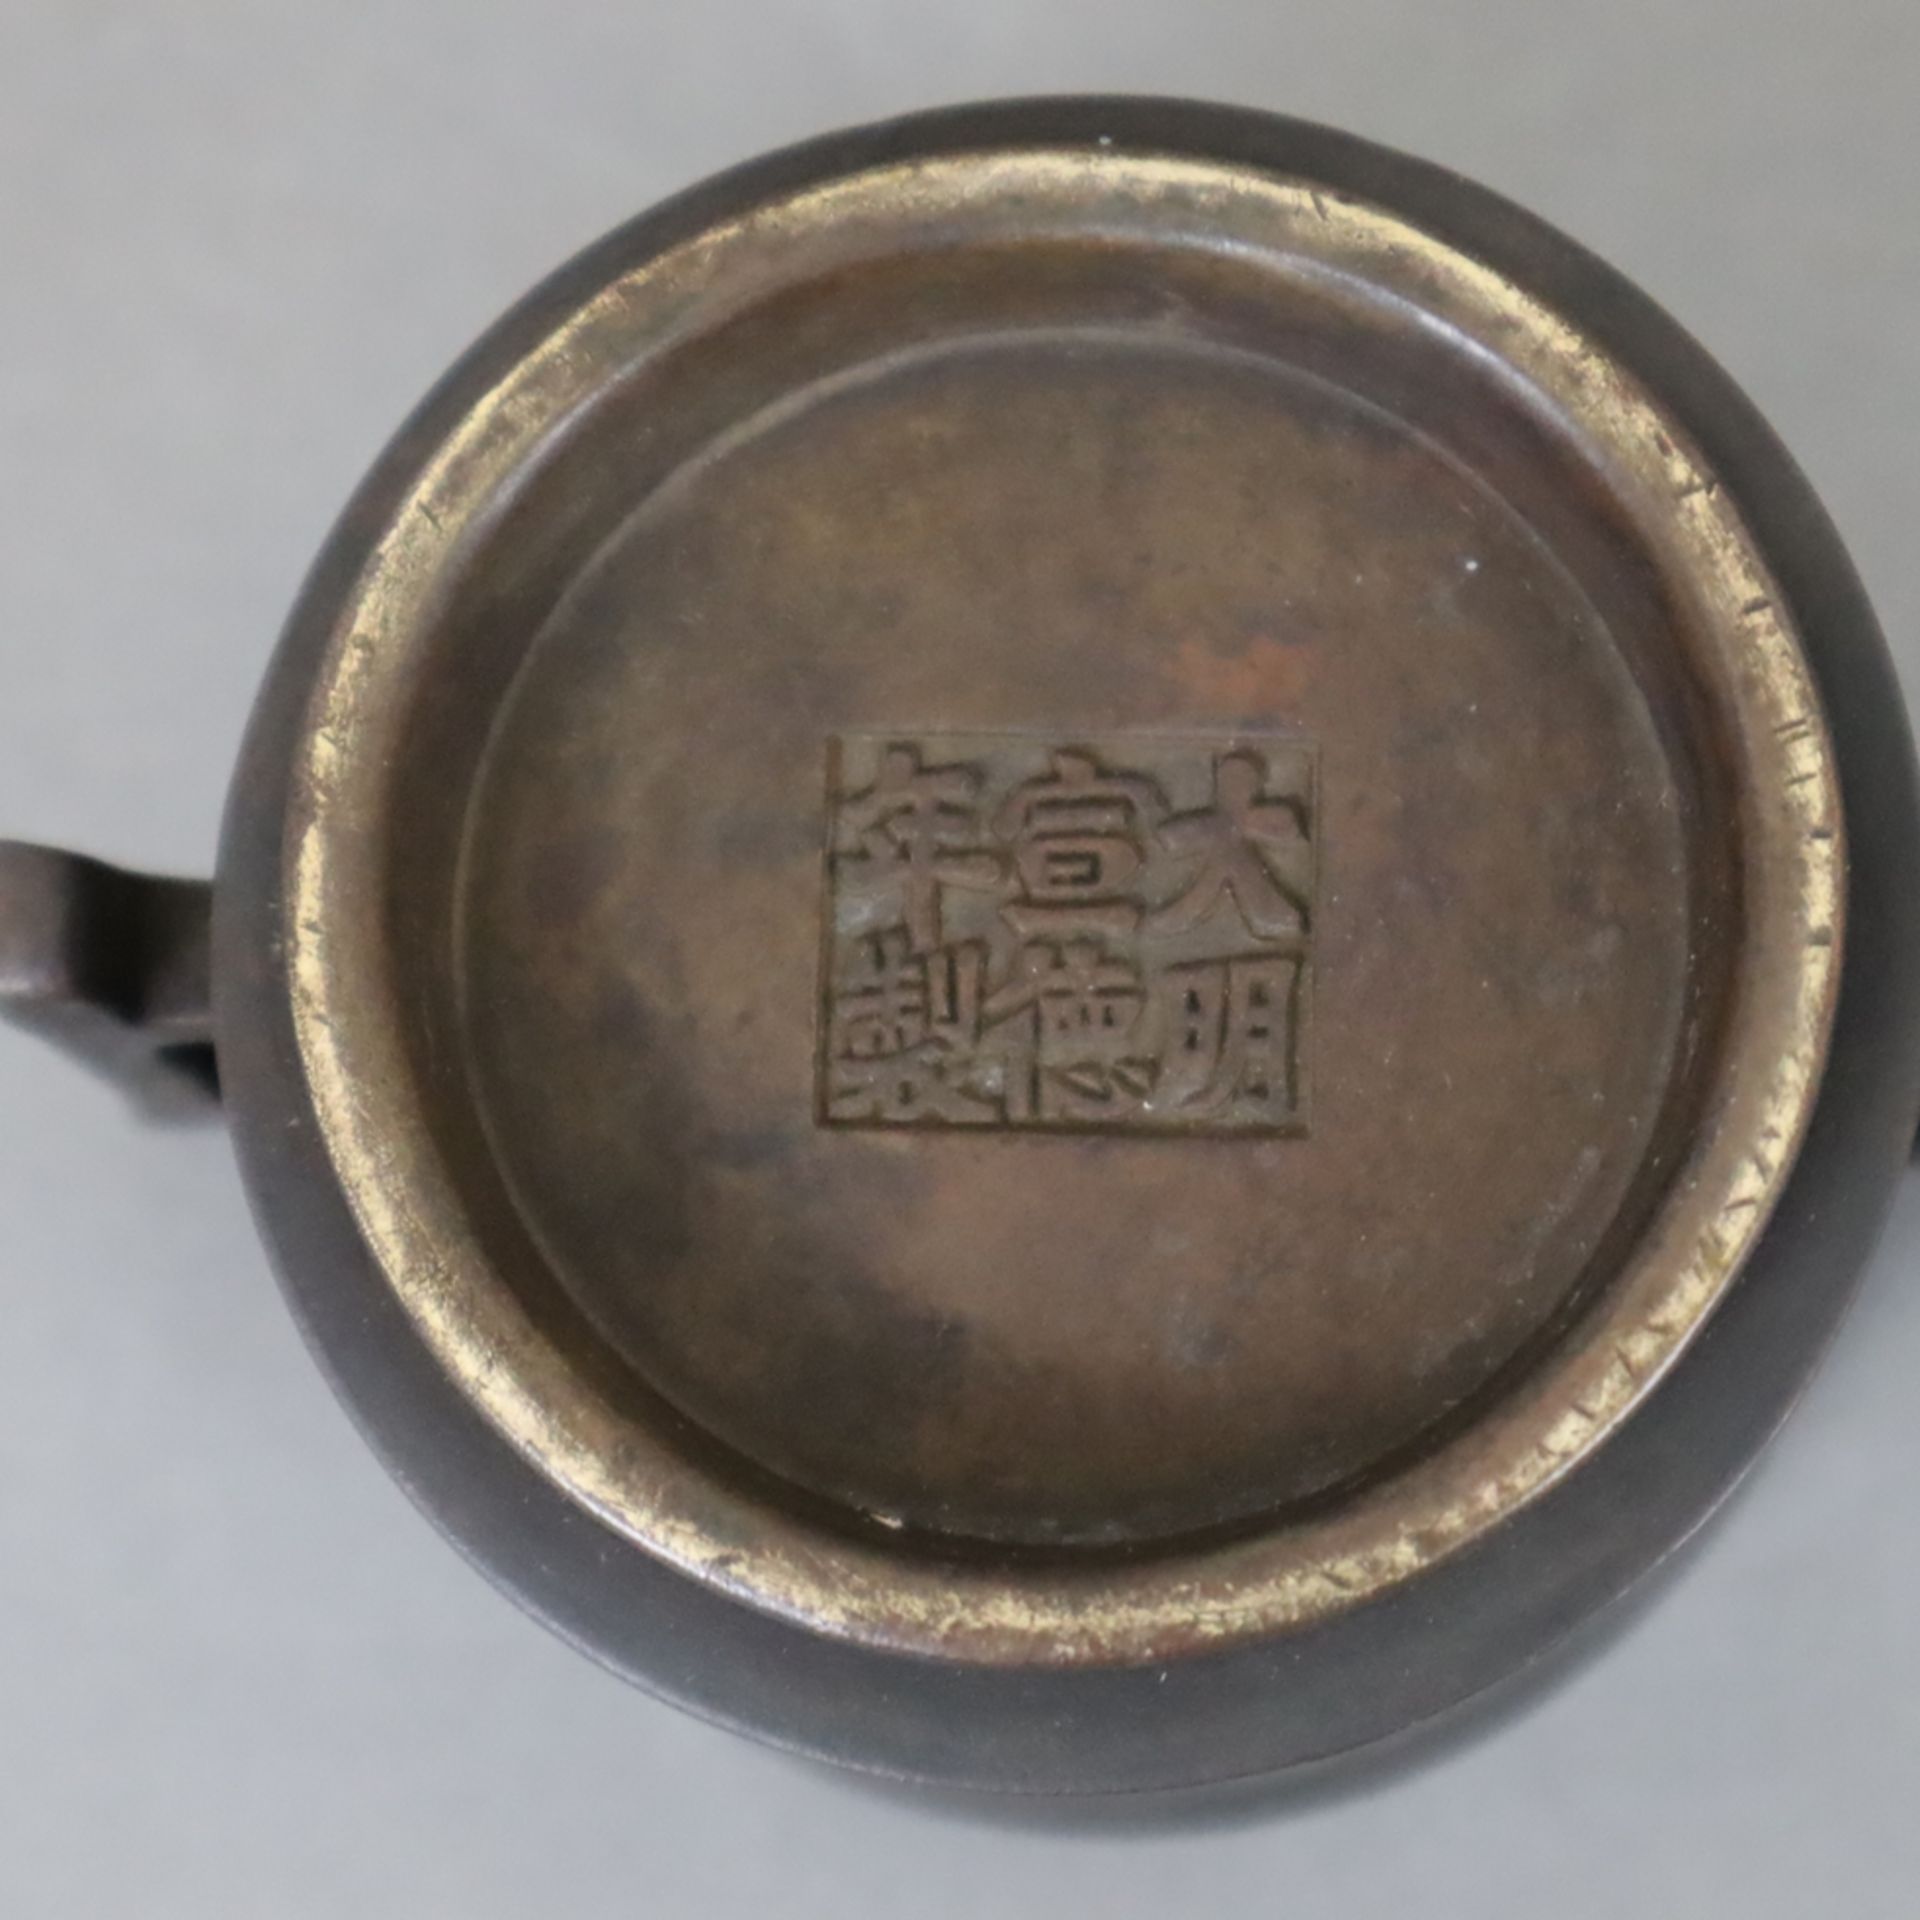 Kleines Räuchergefäß - Bronze mit dunkelbrauner Patina, zylindrisches leicht tailliertes Räuchergef - Bild 6 aus 6